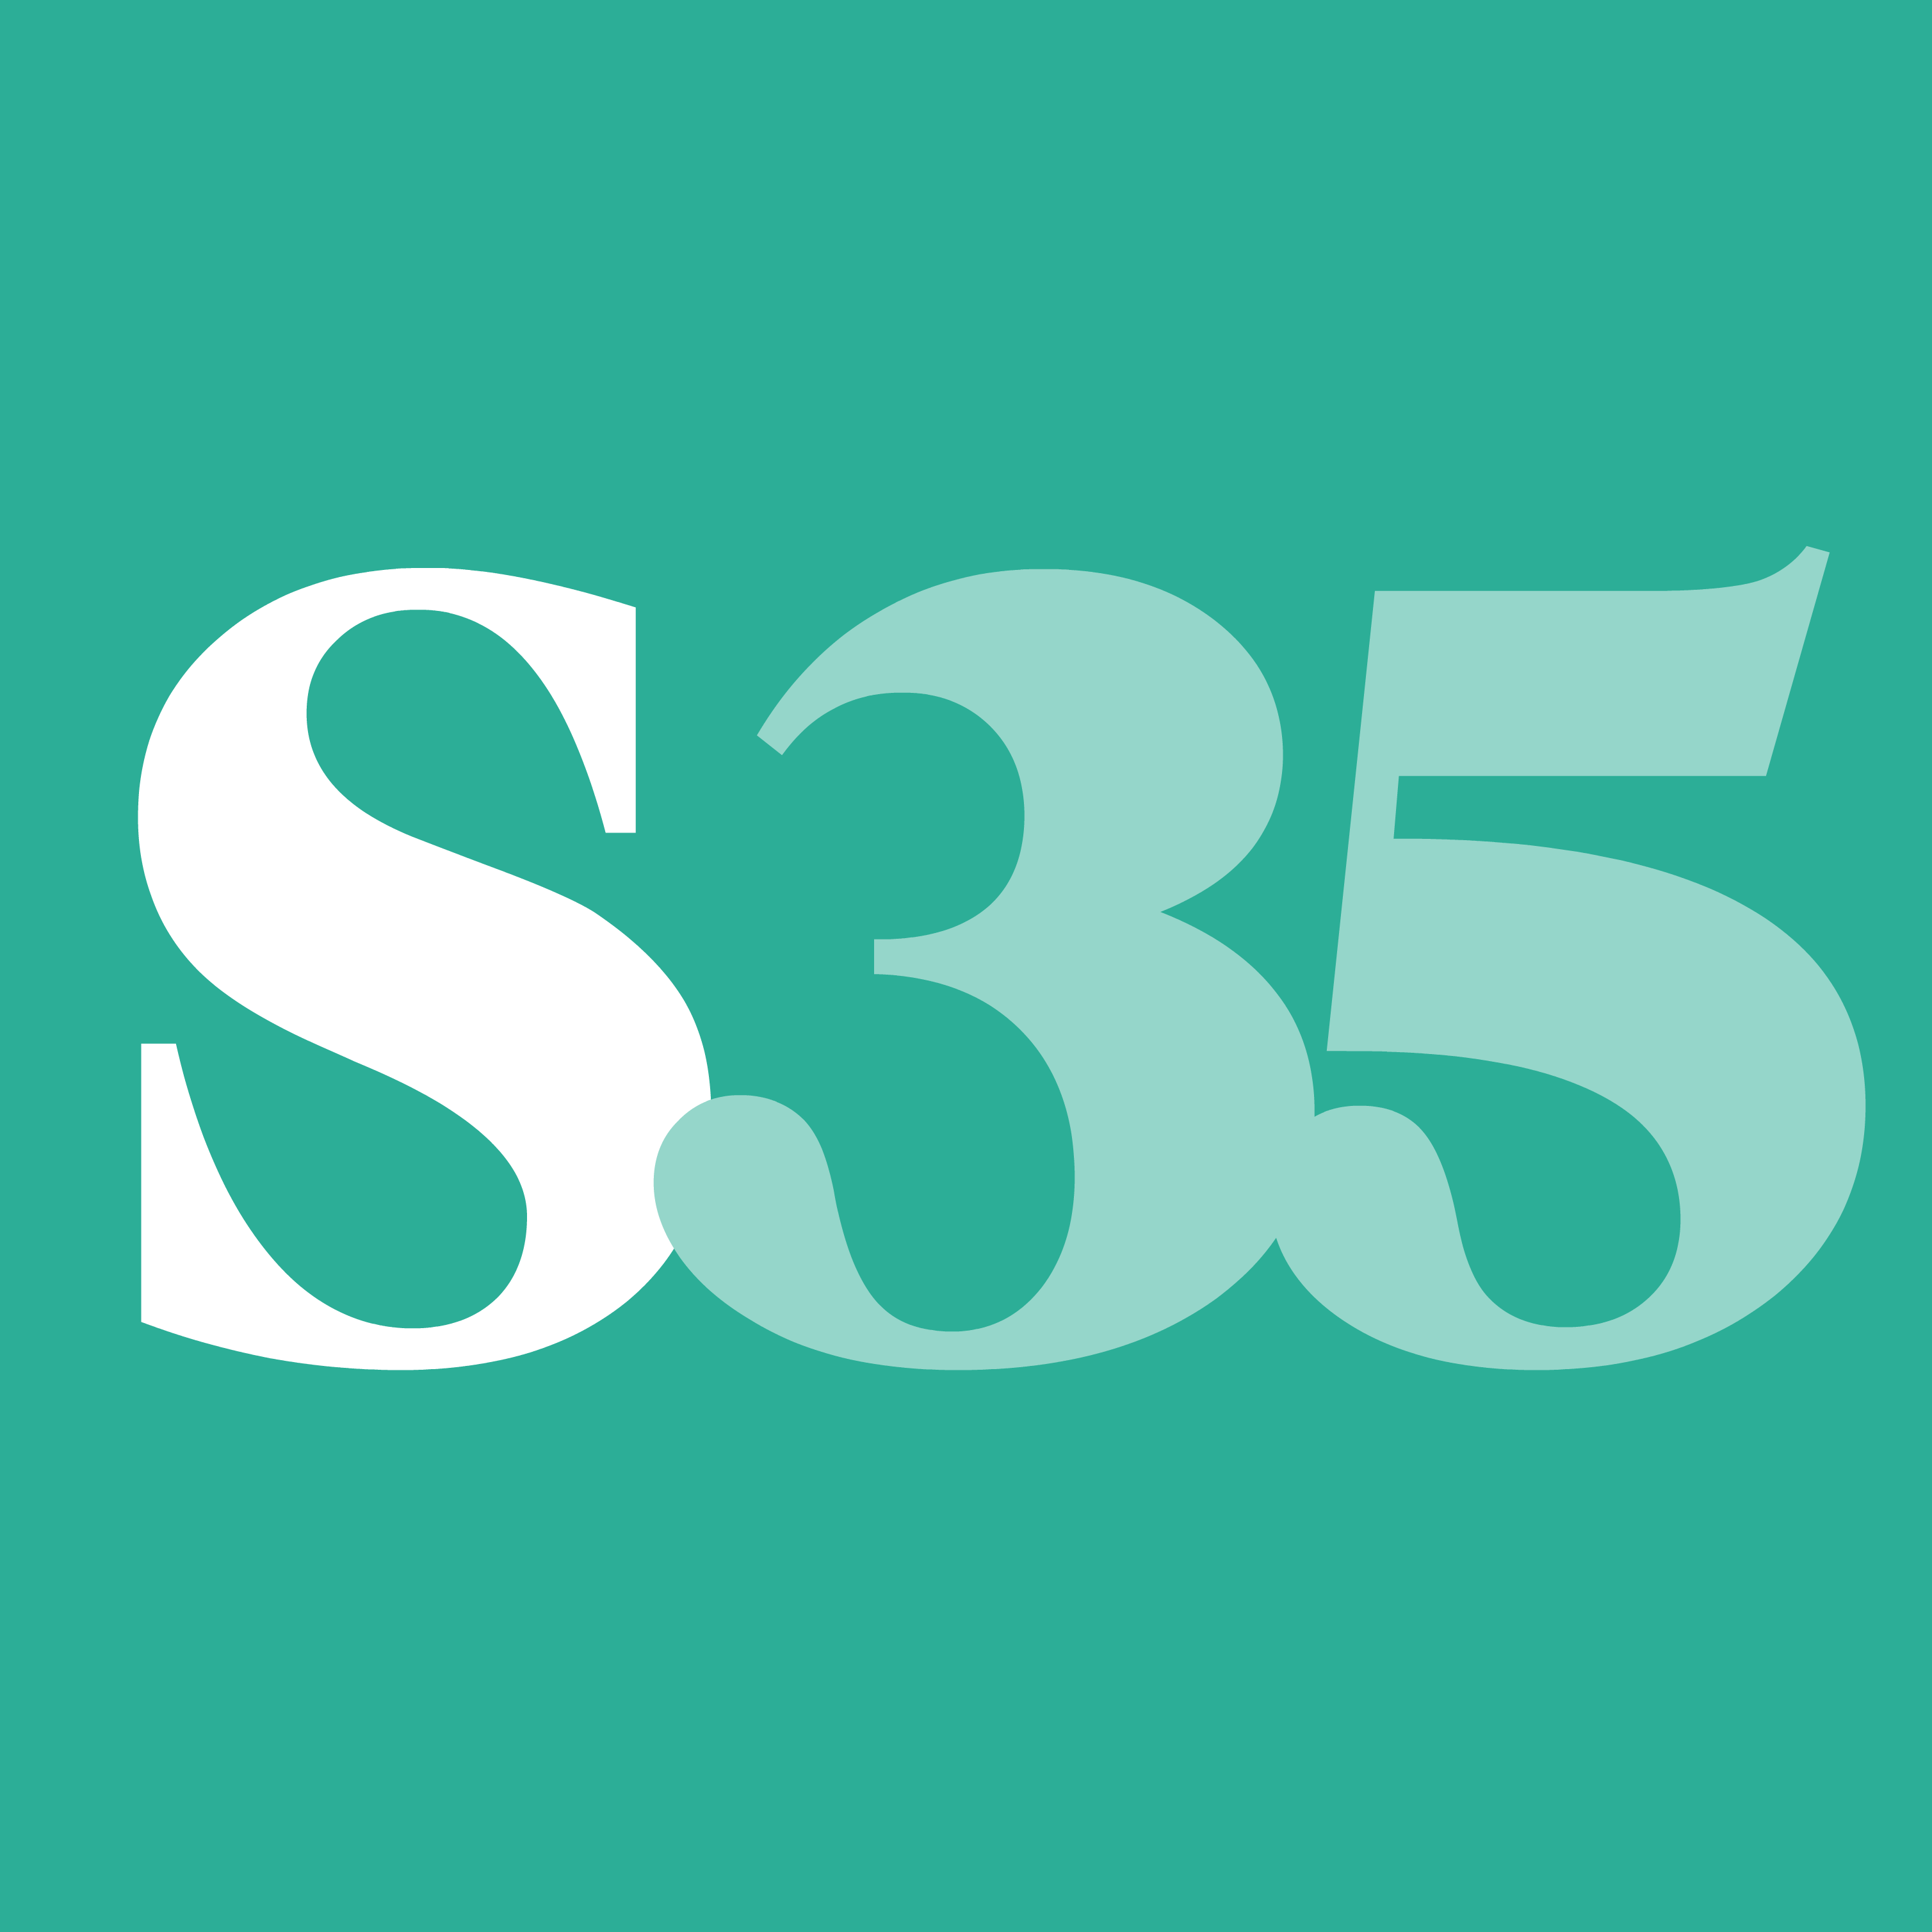 Salud35